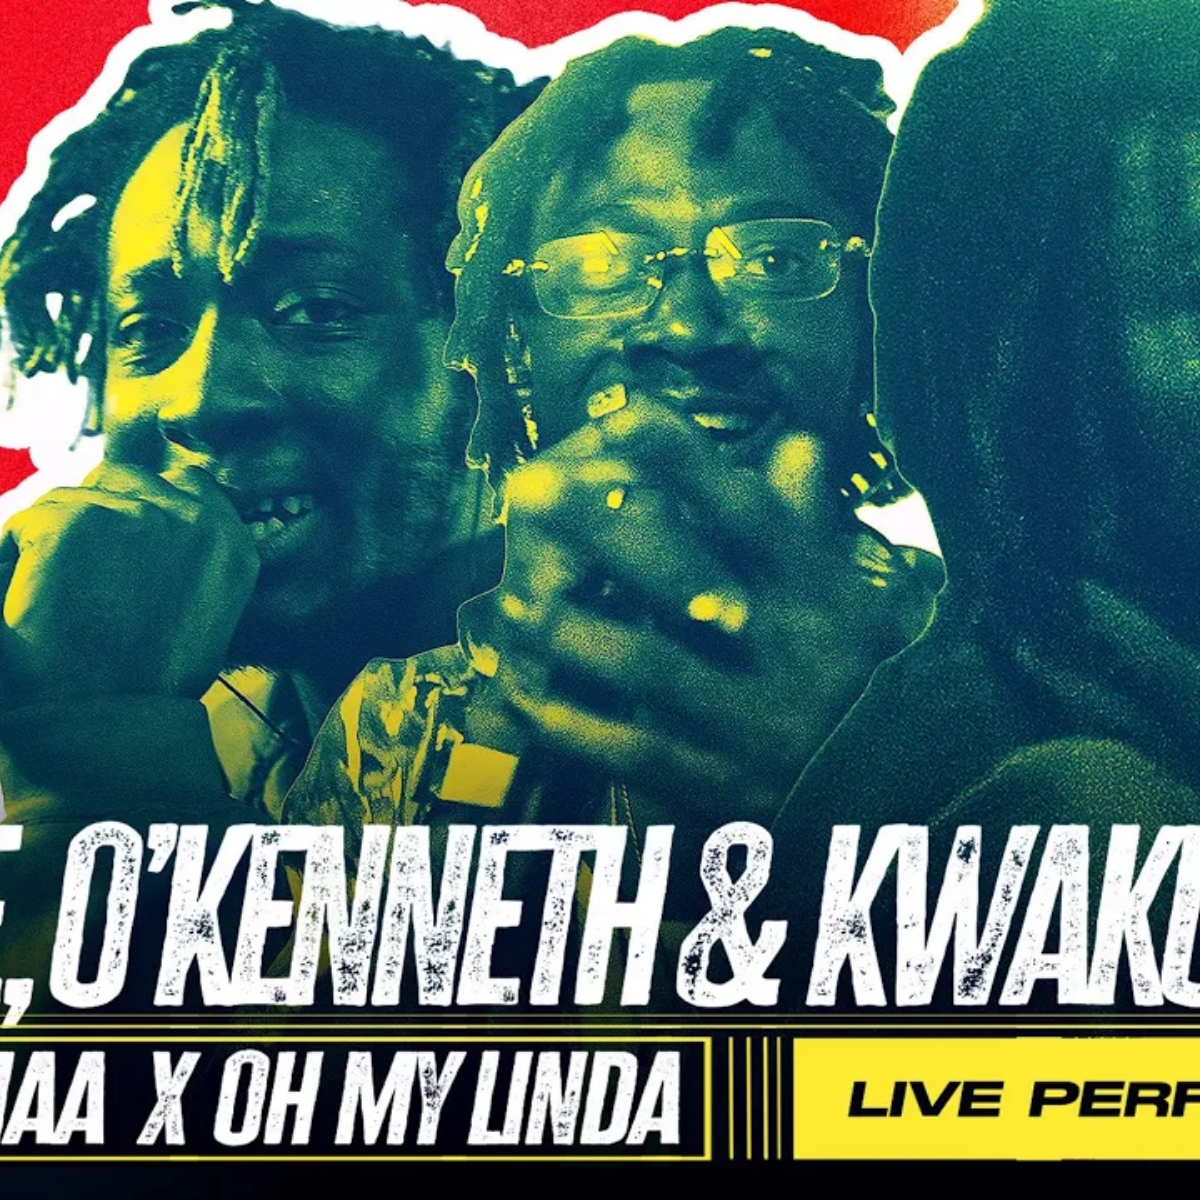 Reggie, OKenneth & Kwaku DMC - Obaa Hemaa x Oh My Linda (Live) 6